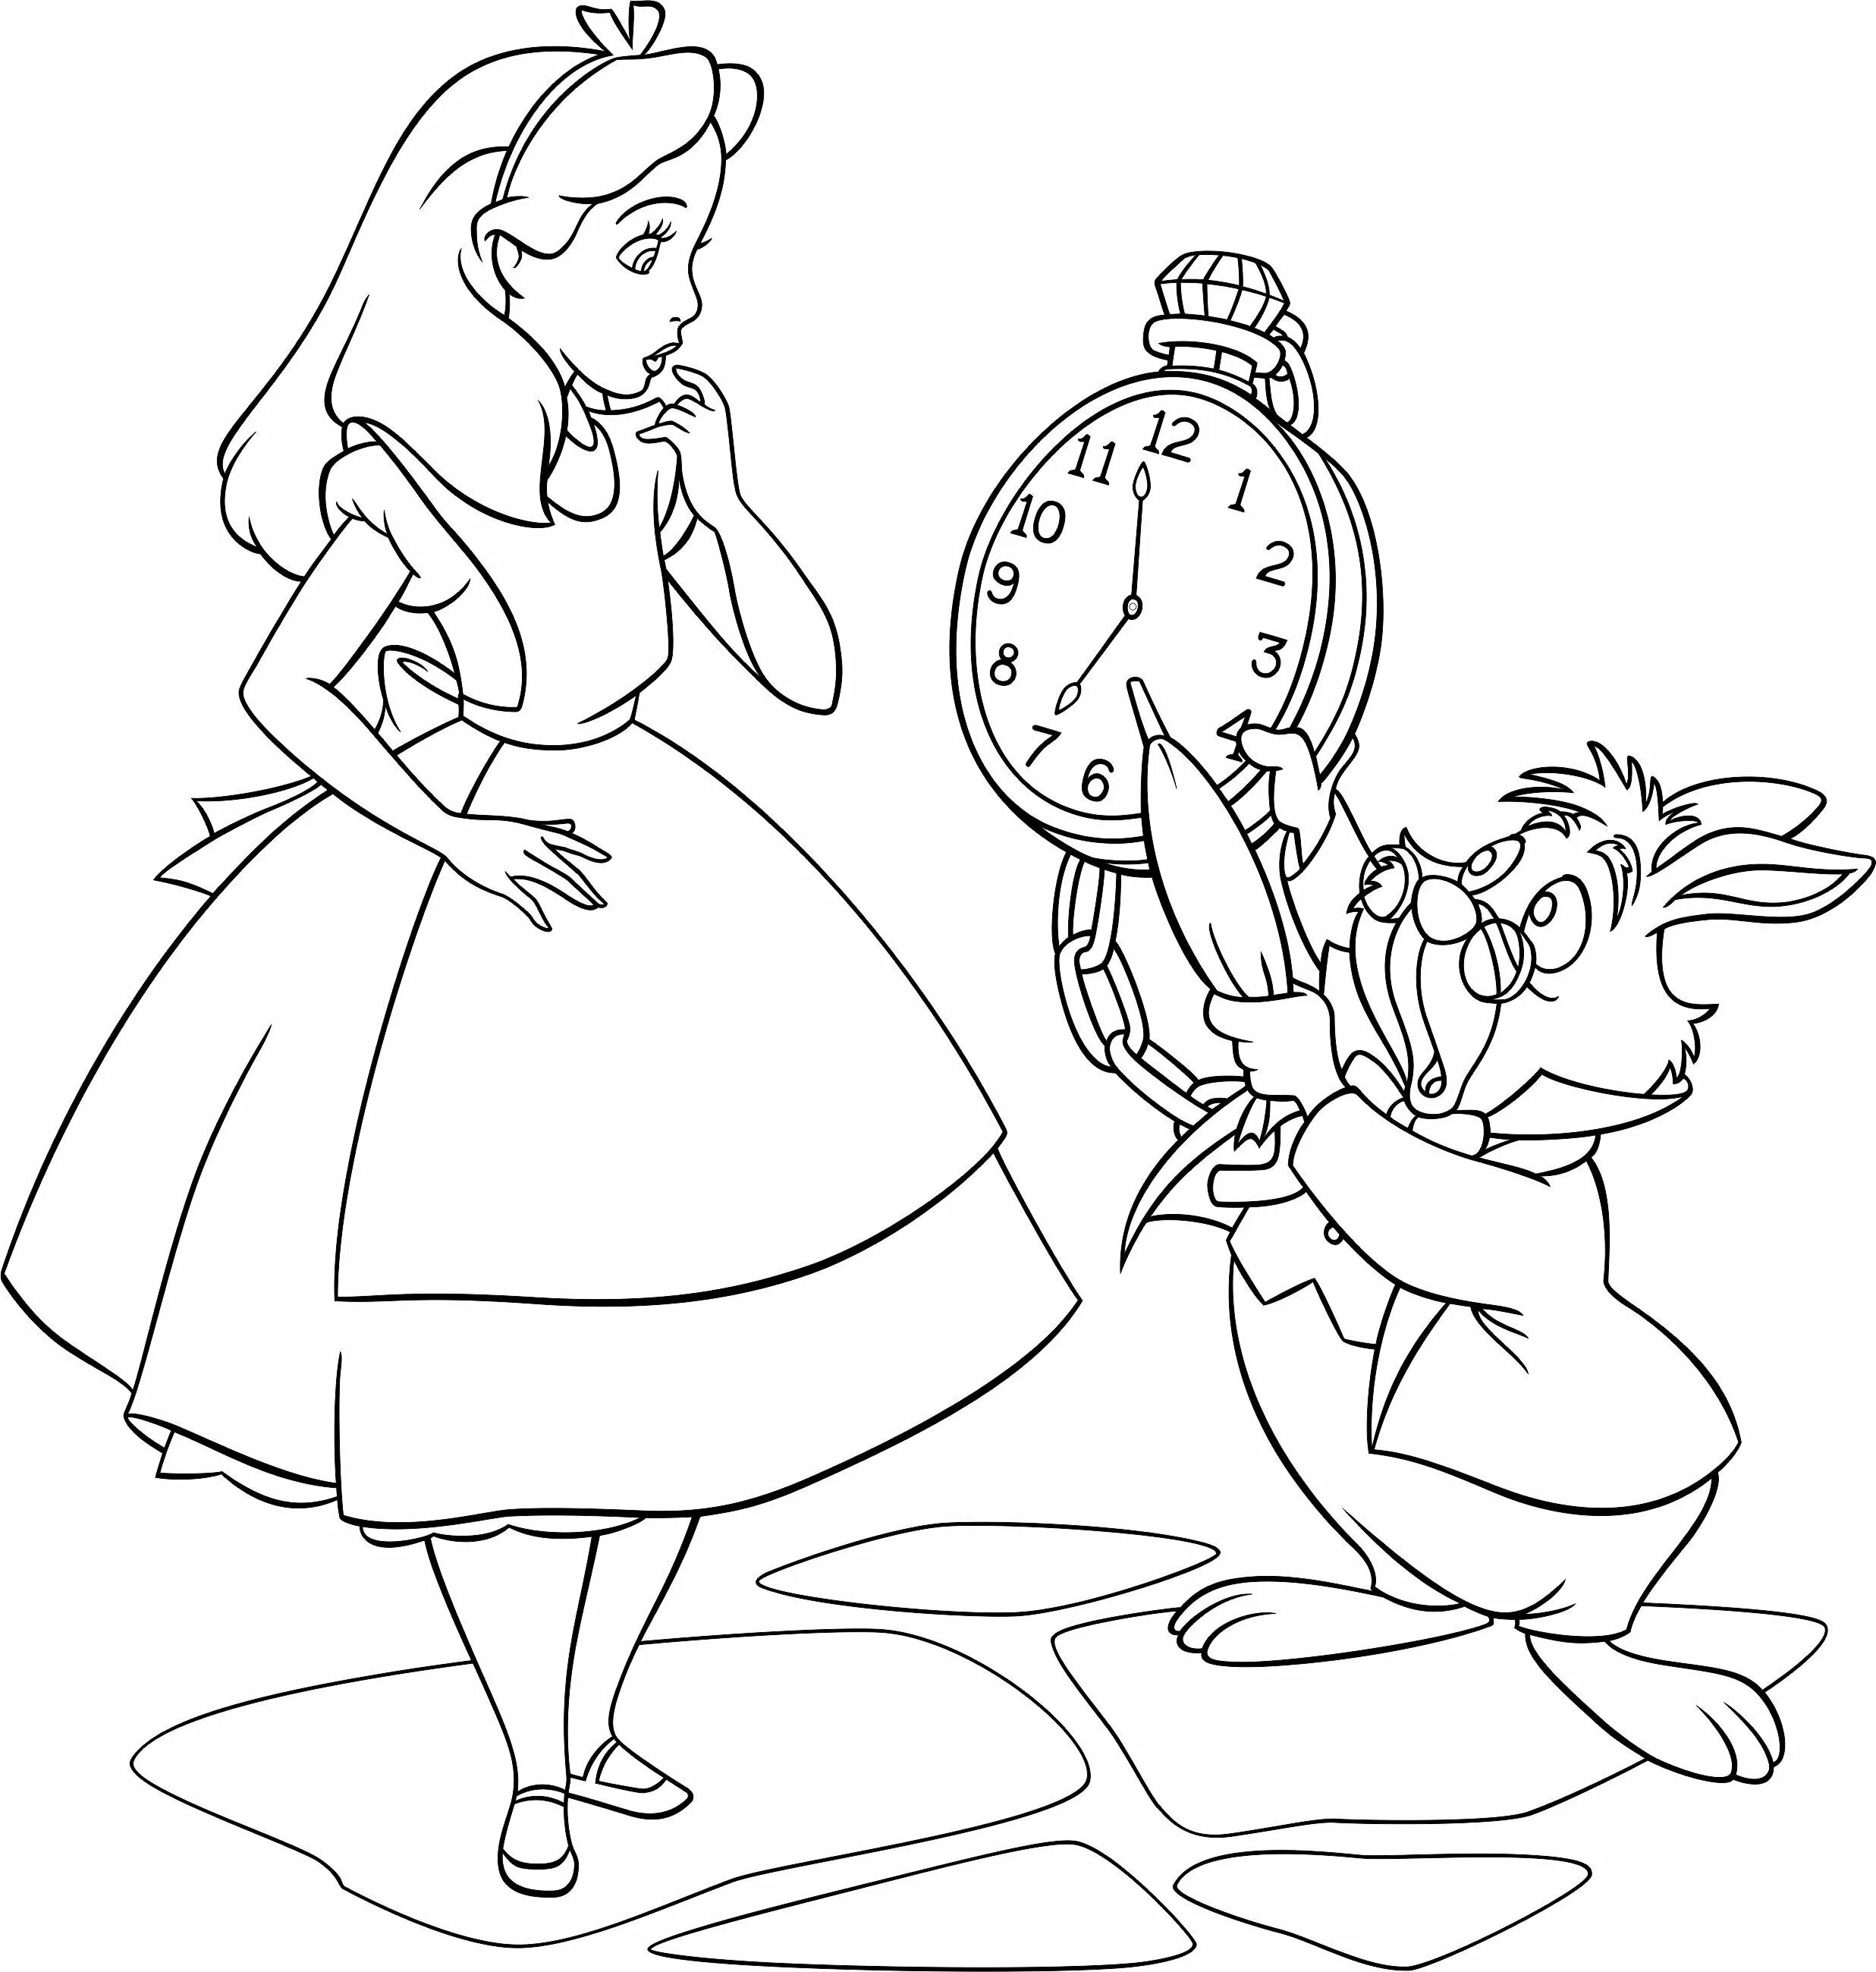 Нарисовать сказку алиса в стране чудес. Алиса в стране чудес рисунок. Рисунок к сказке Алиса в стране чудес. Нарисовать иллюстрацию к сказке Алиса в стране чудес. Алиса в стране чудес рисунок детский.